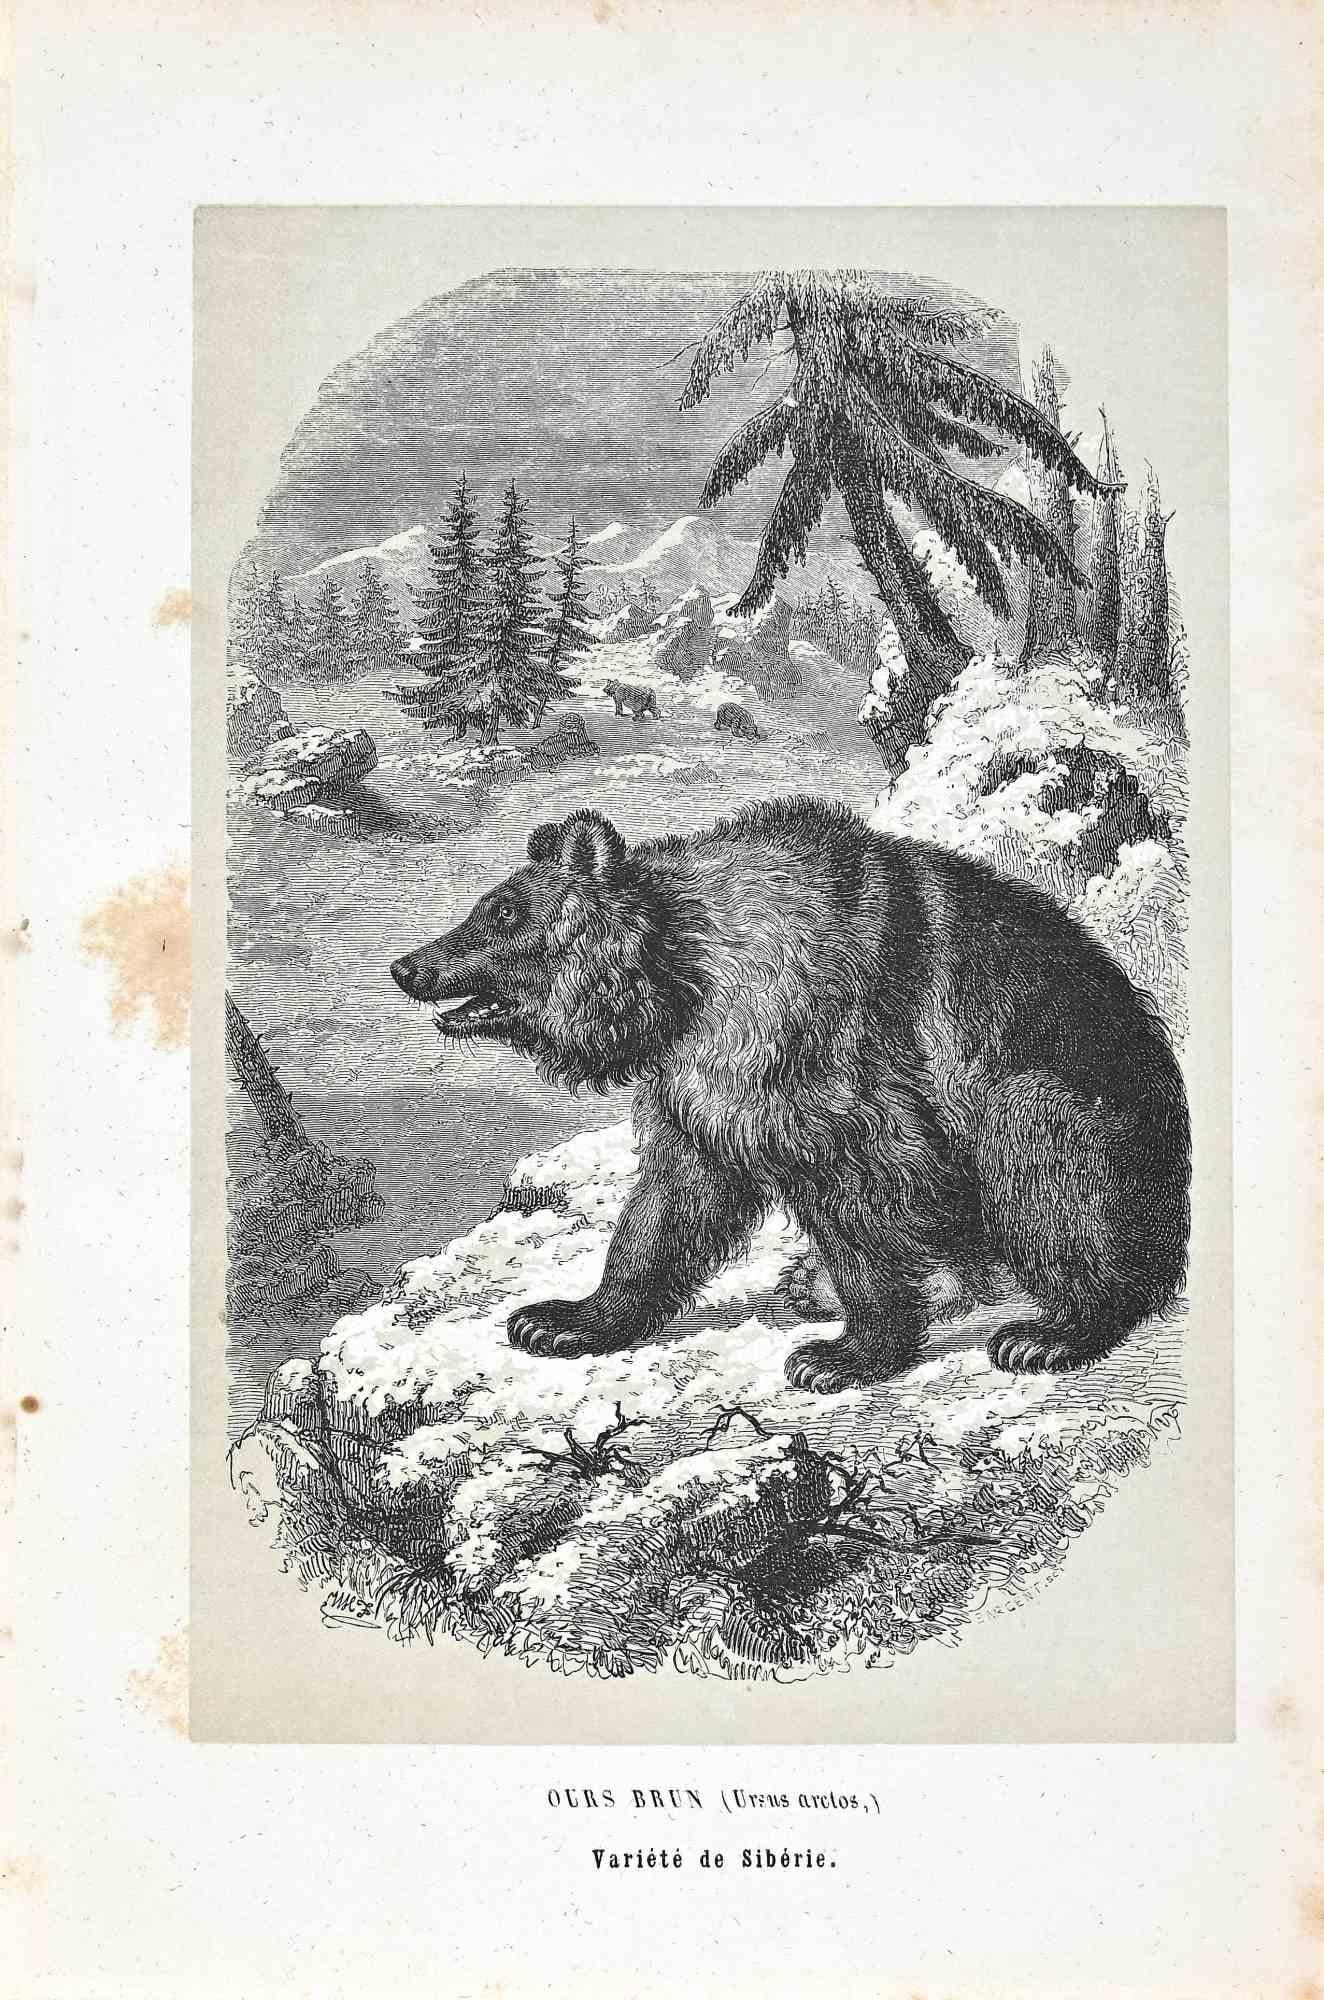 Ours de Sibérie est une lithographie originale sur papier couleur ivoire, réalisée par Paul Gervais (1816-1879). L'œuvre est issue de la série "Les Trois Règnes de la Nature", et a été publiée en 1854.

Bon état, à l'exception de quelques rousseurs